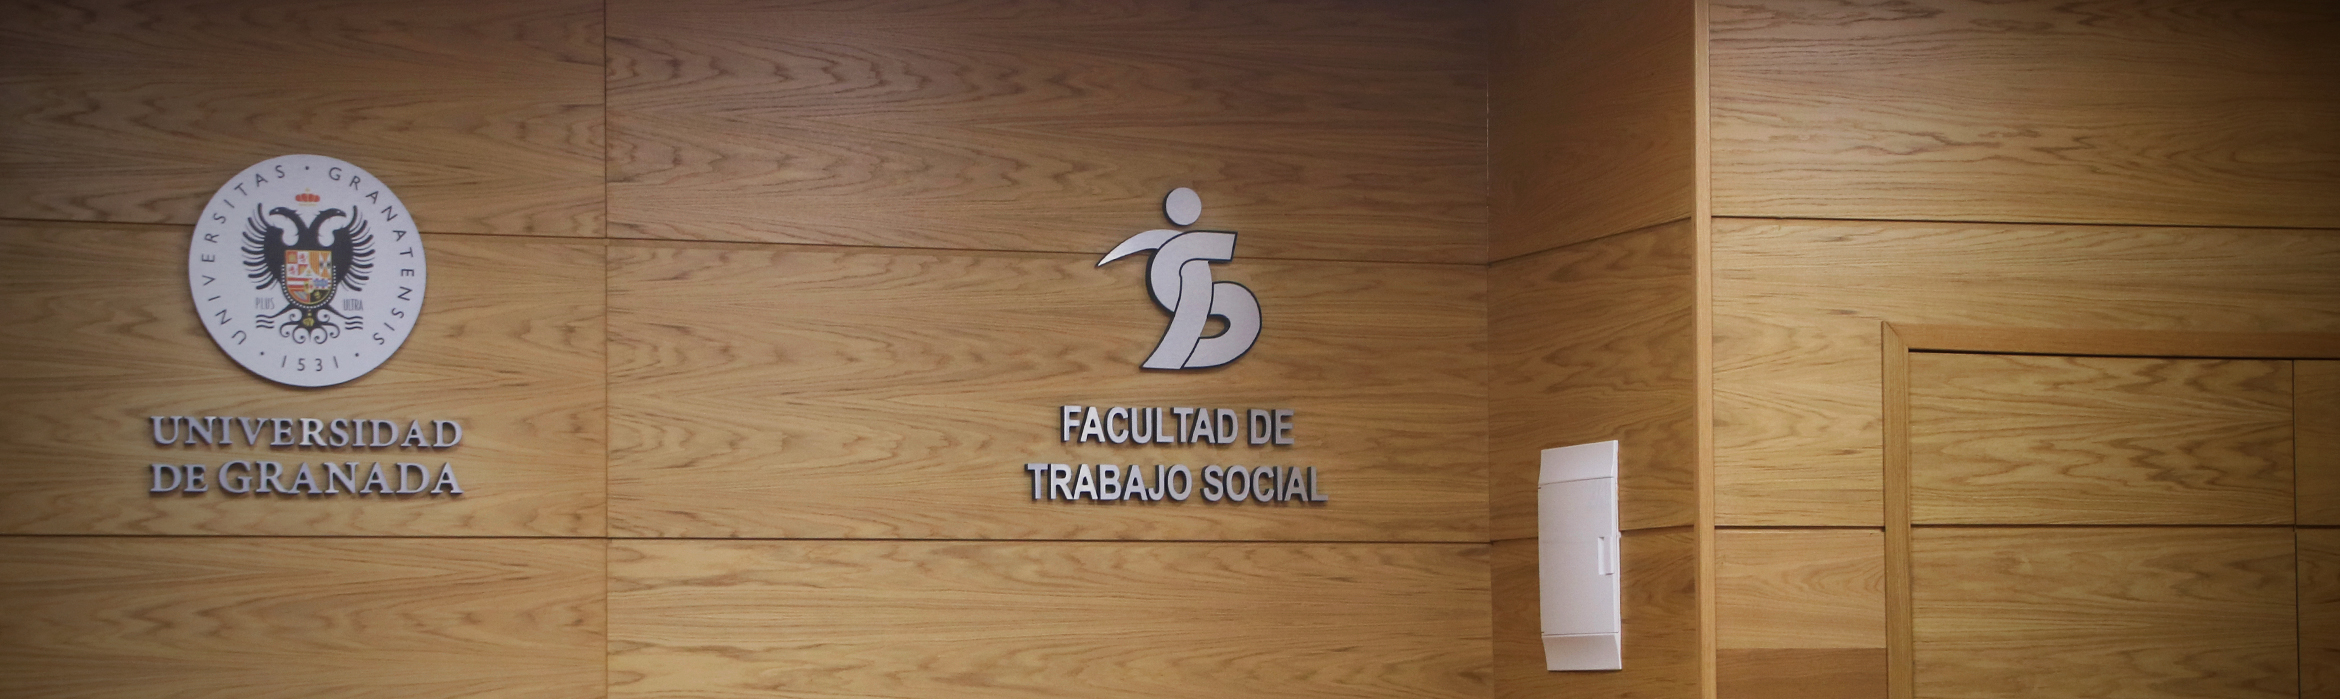 Salón de Grados "Concepción Arenal" de la Facultad de Trabajo Social